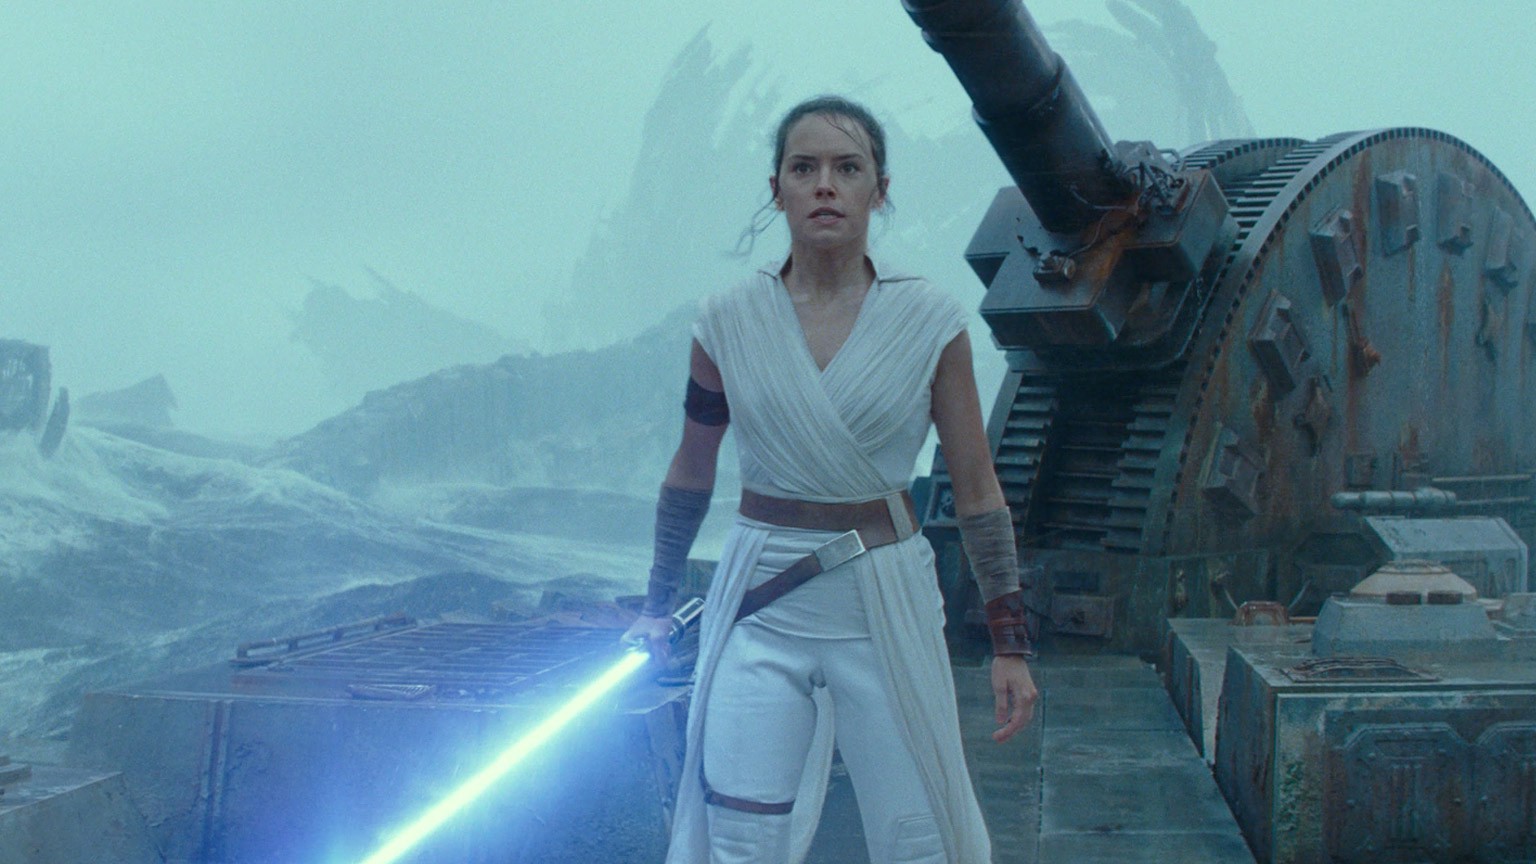 Star Wars: Rey Had An Unusual Name In George Lucas’ Original Outline